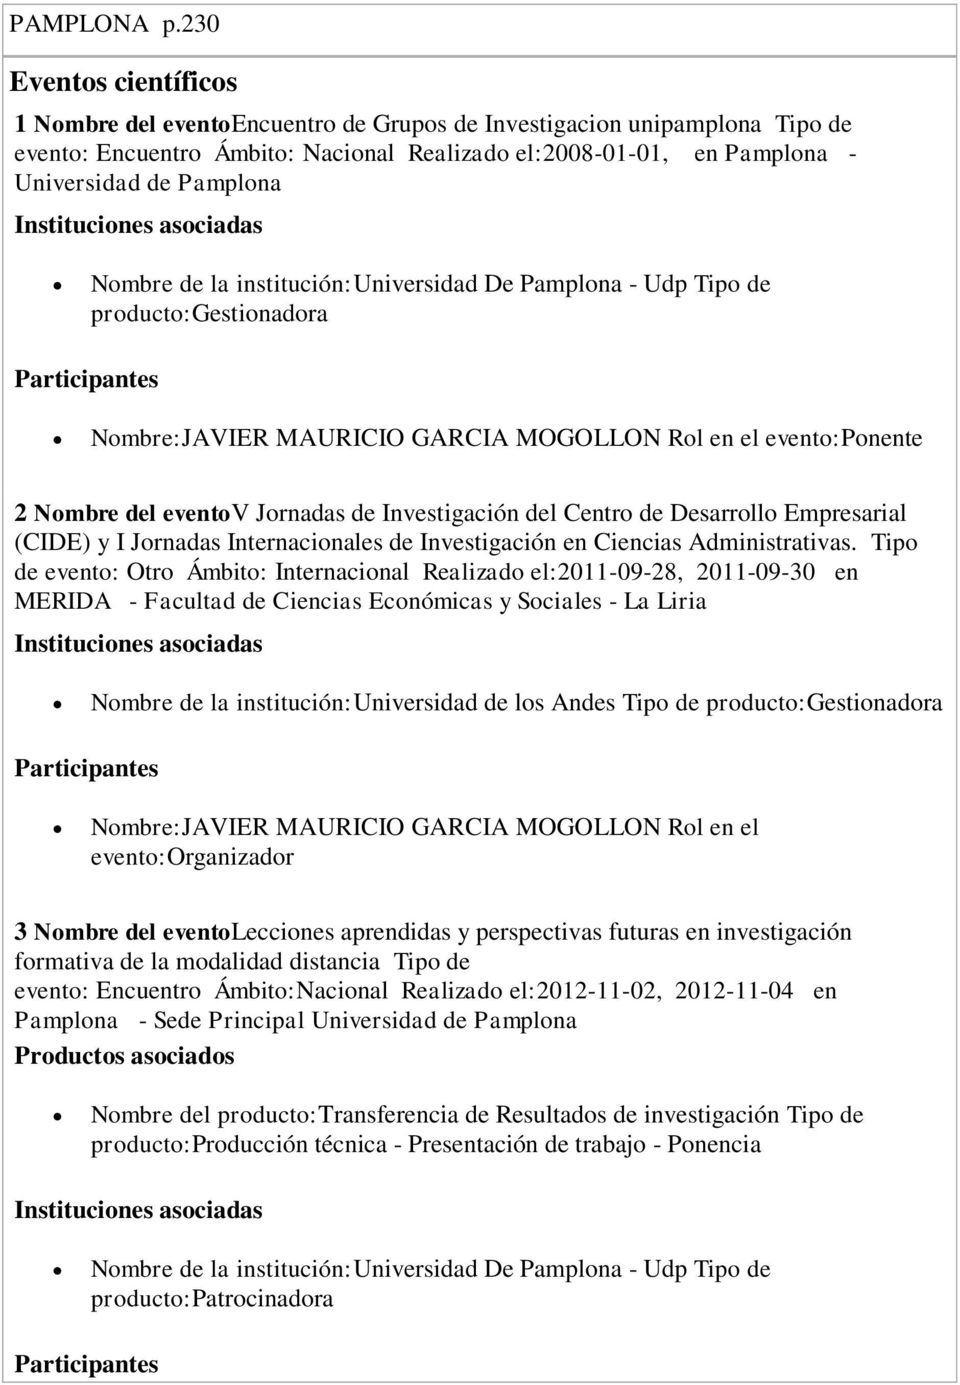 Instituciones asociadas Nombre de la institución:universidad De Pamplona - Udp Tipo de producto:gestionadora Participantes Nombre:JAVIER MAURICIO GARCIA MOGOLLON Rol en el evento:ponente 2 Nombre del